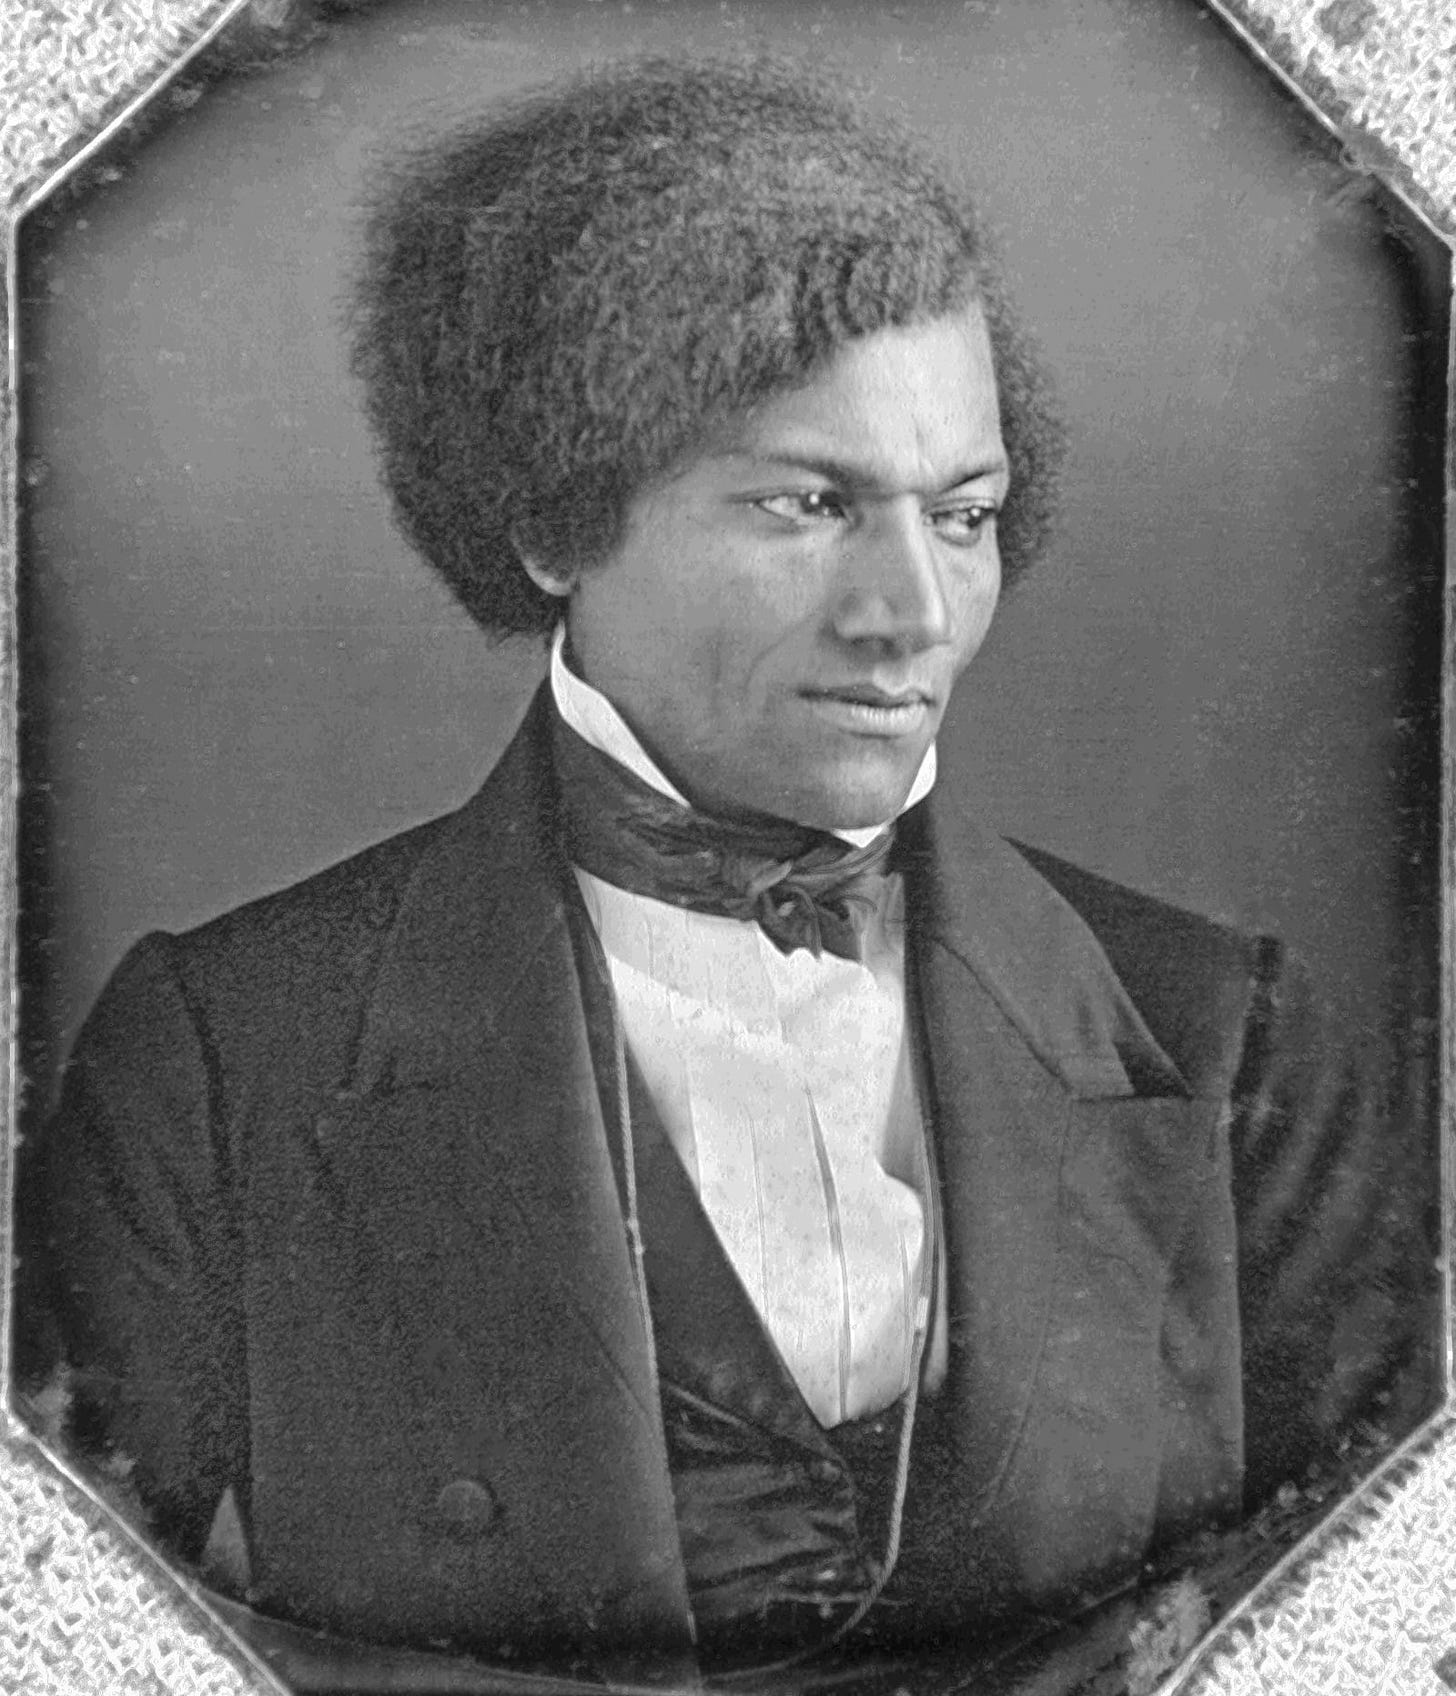 Headshot of Douglass, circa 1840s.